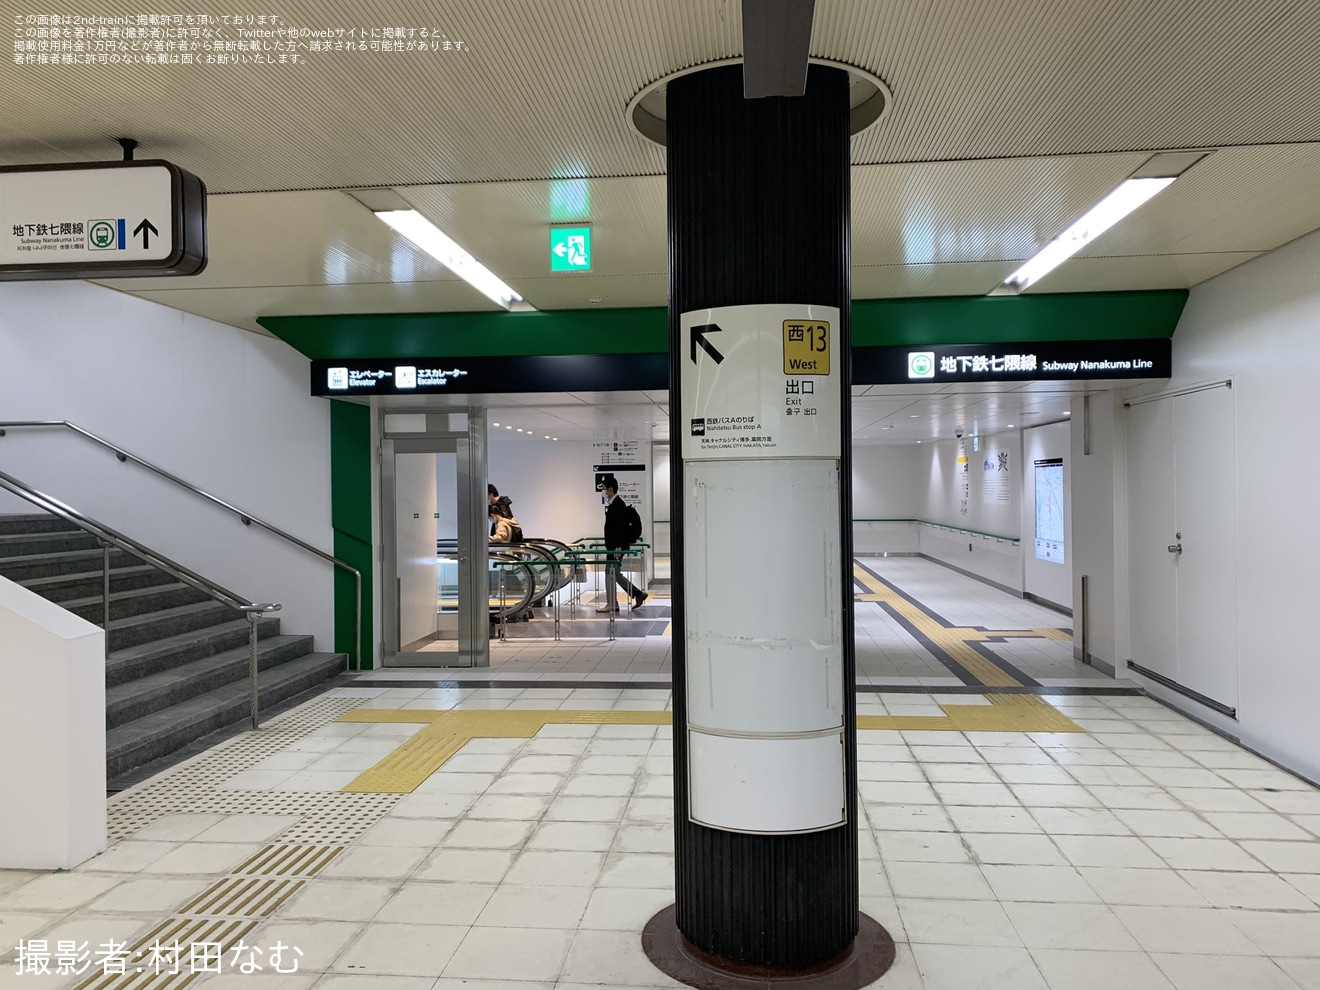 【福市交】七隈線が、天神南〜博多間で延伸開業の拡大写真